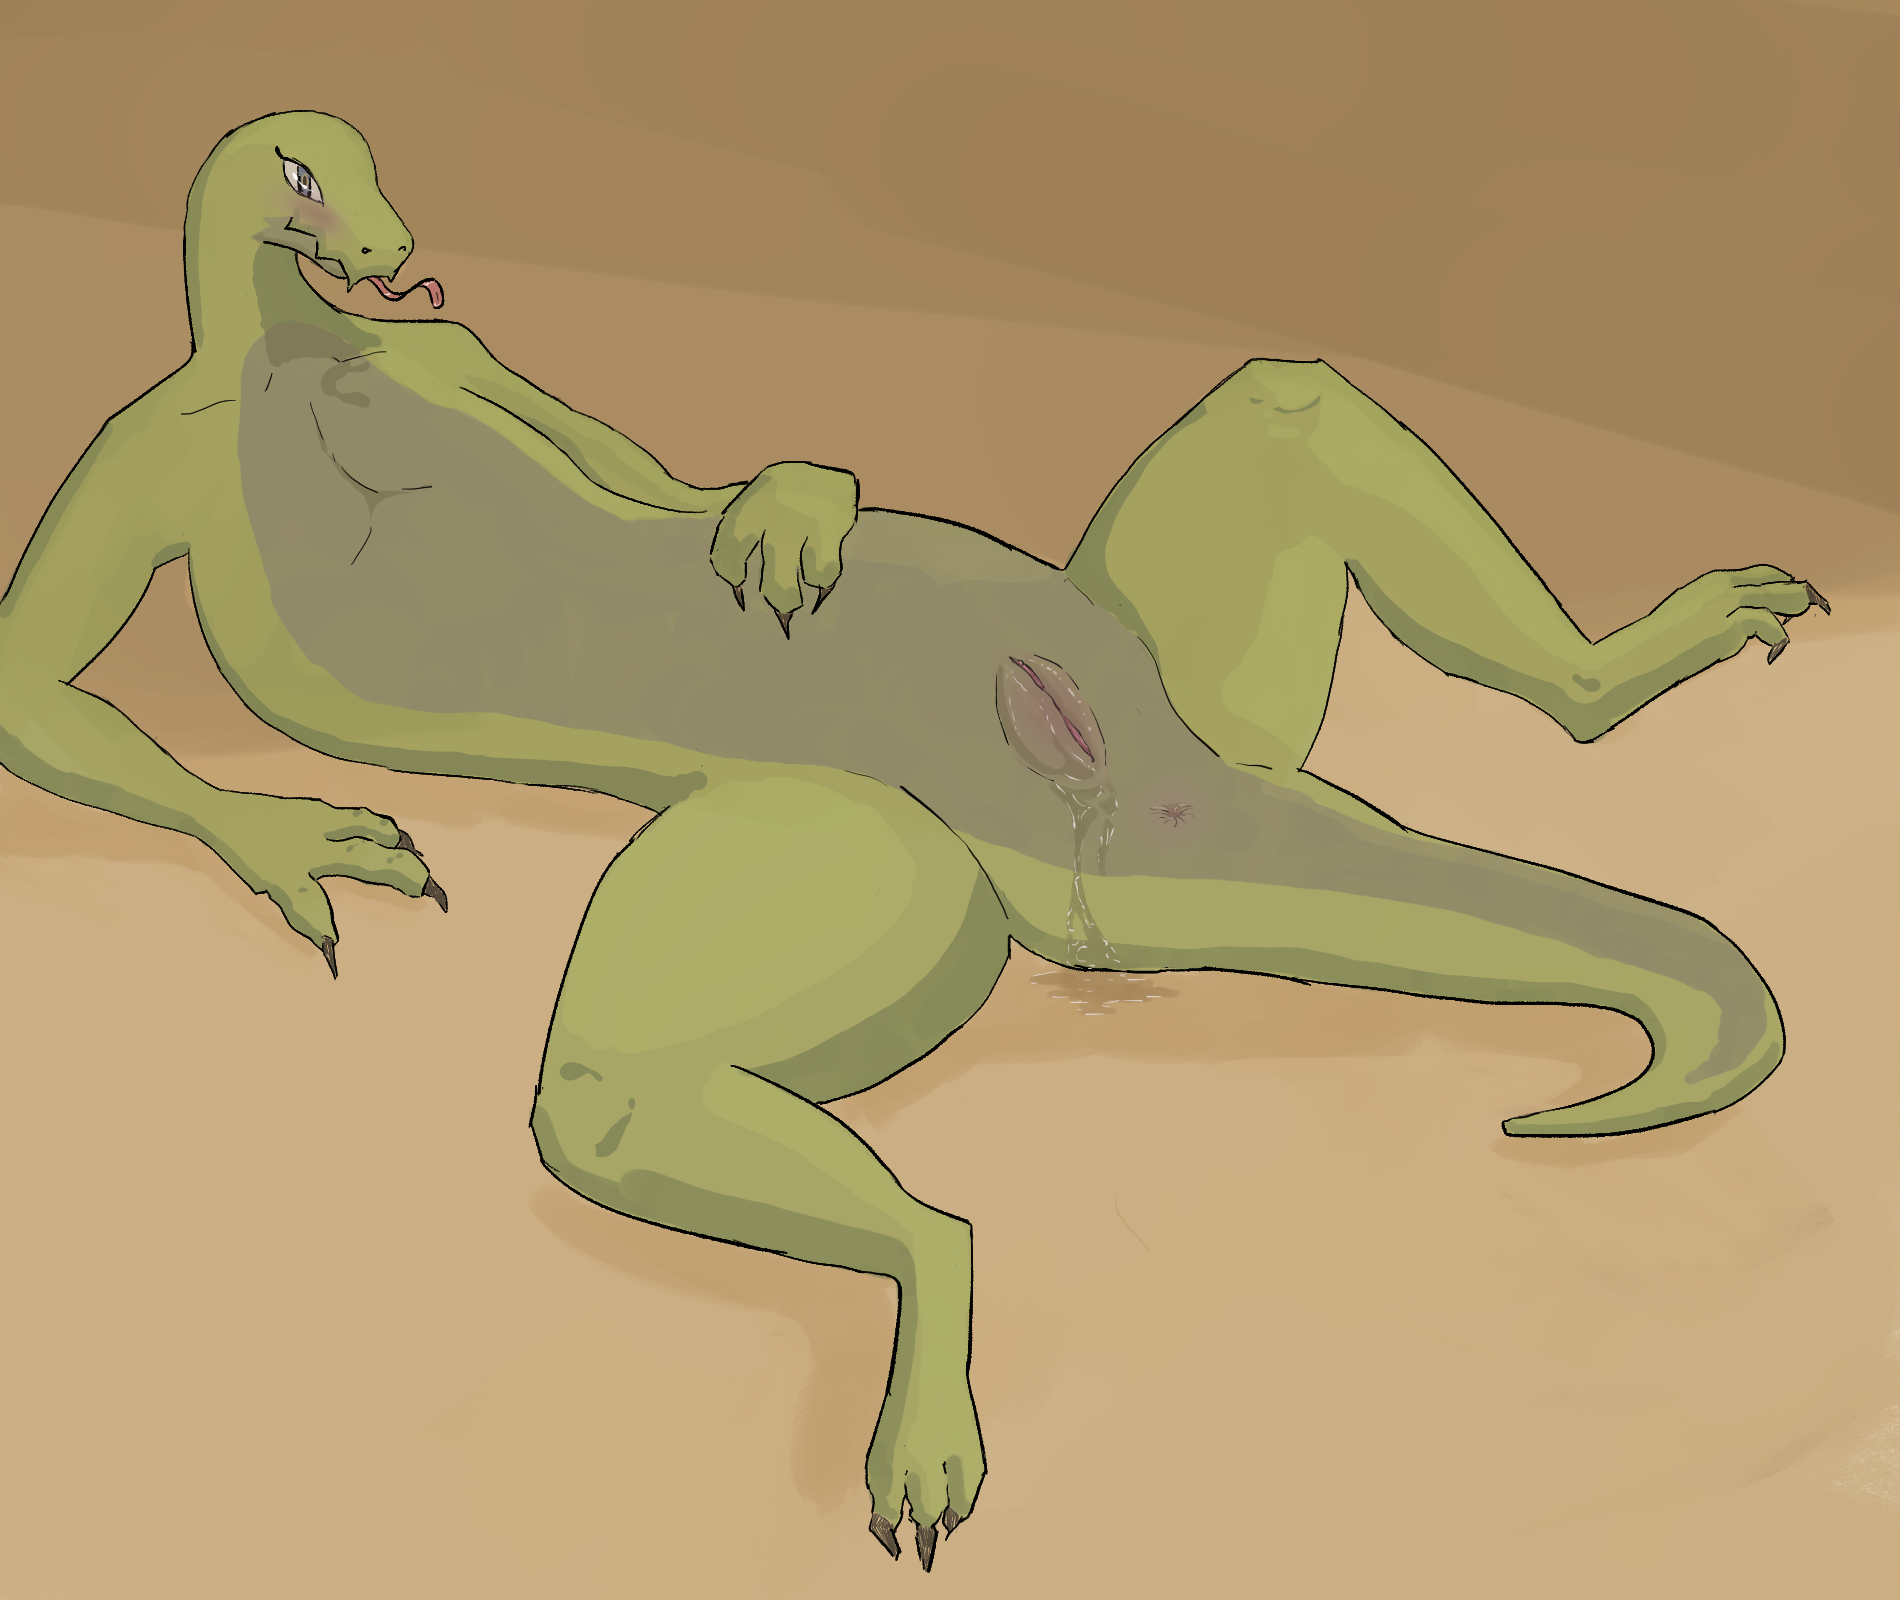 Naked lot lizards